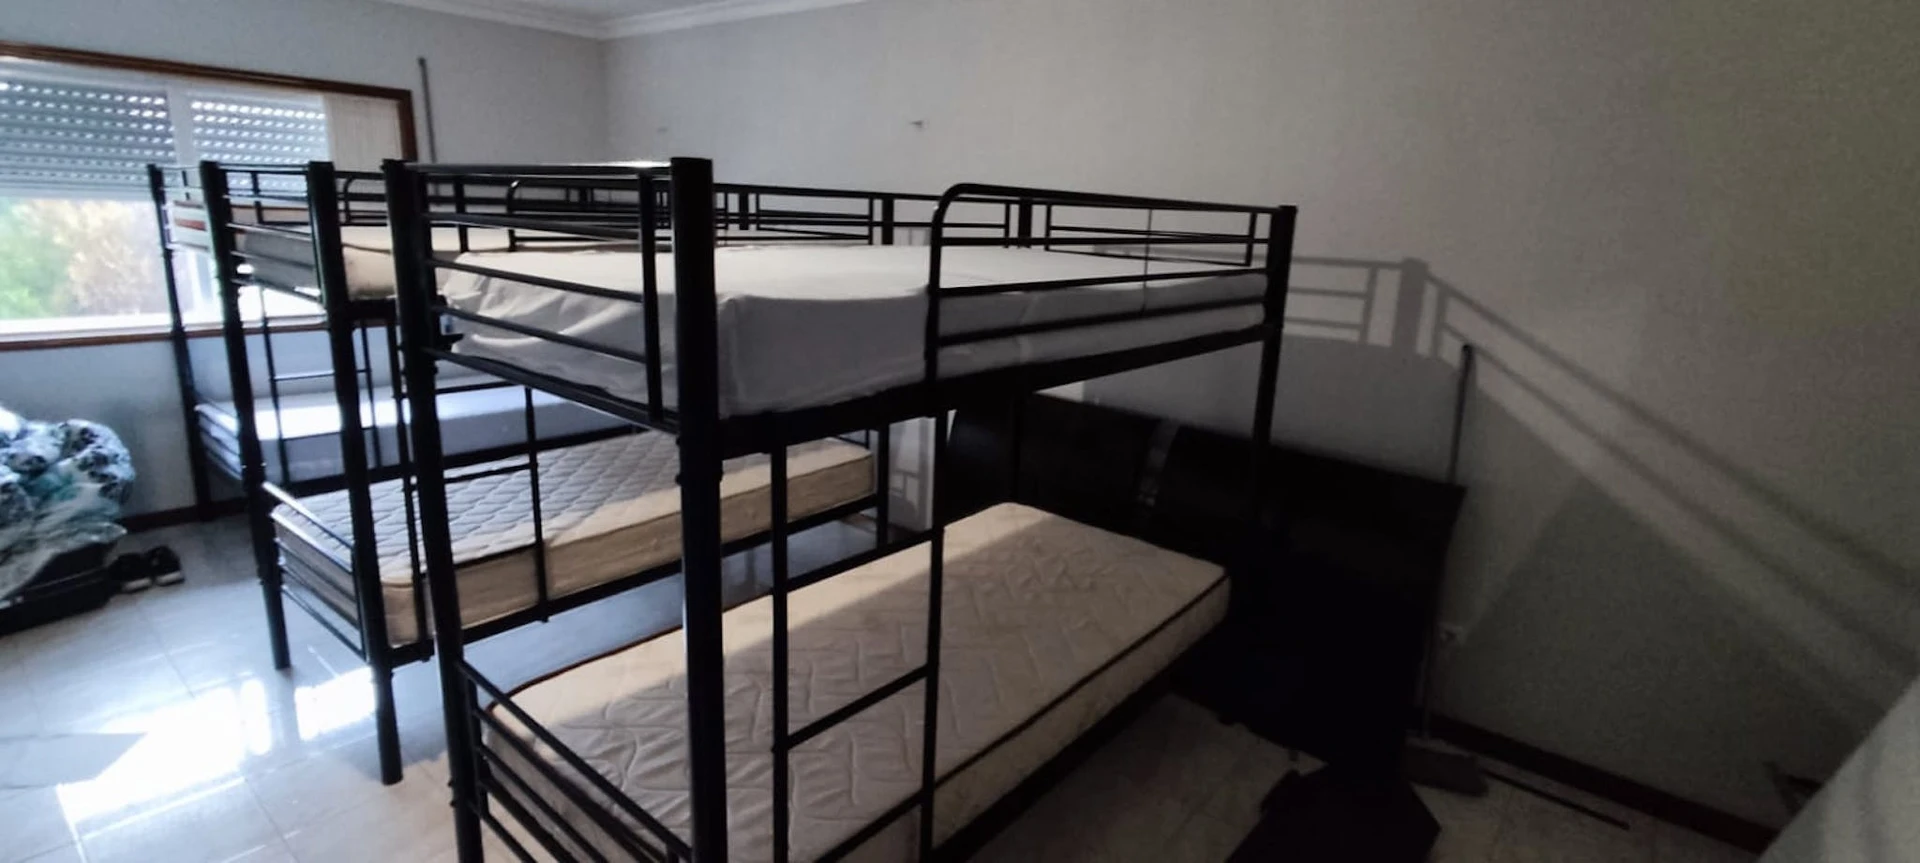 Habitación compartida con otro estudiante en Oporto